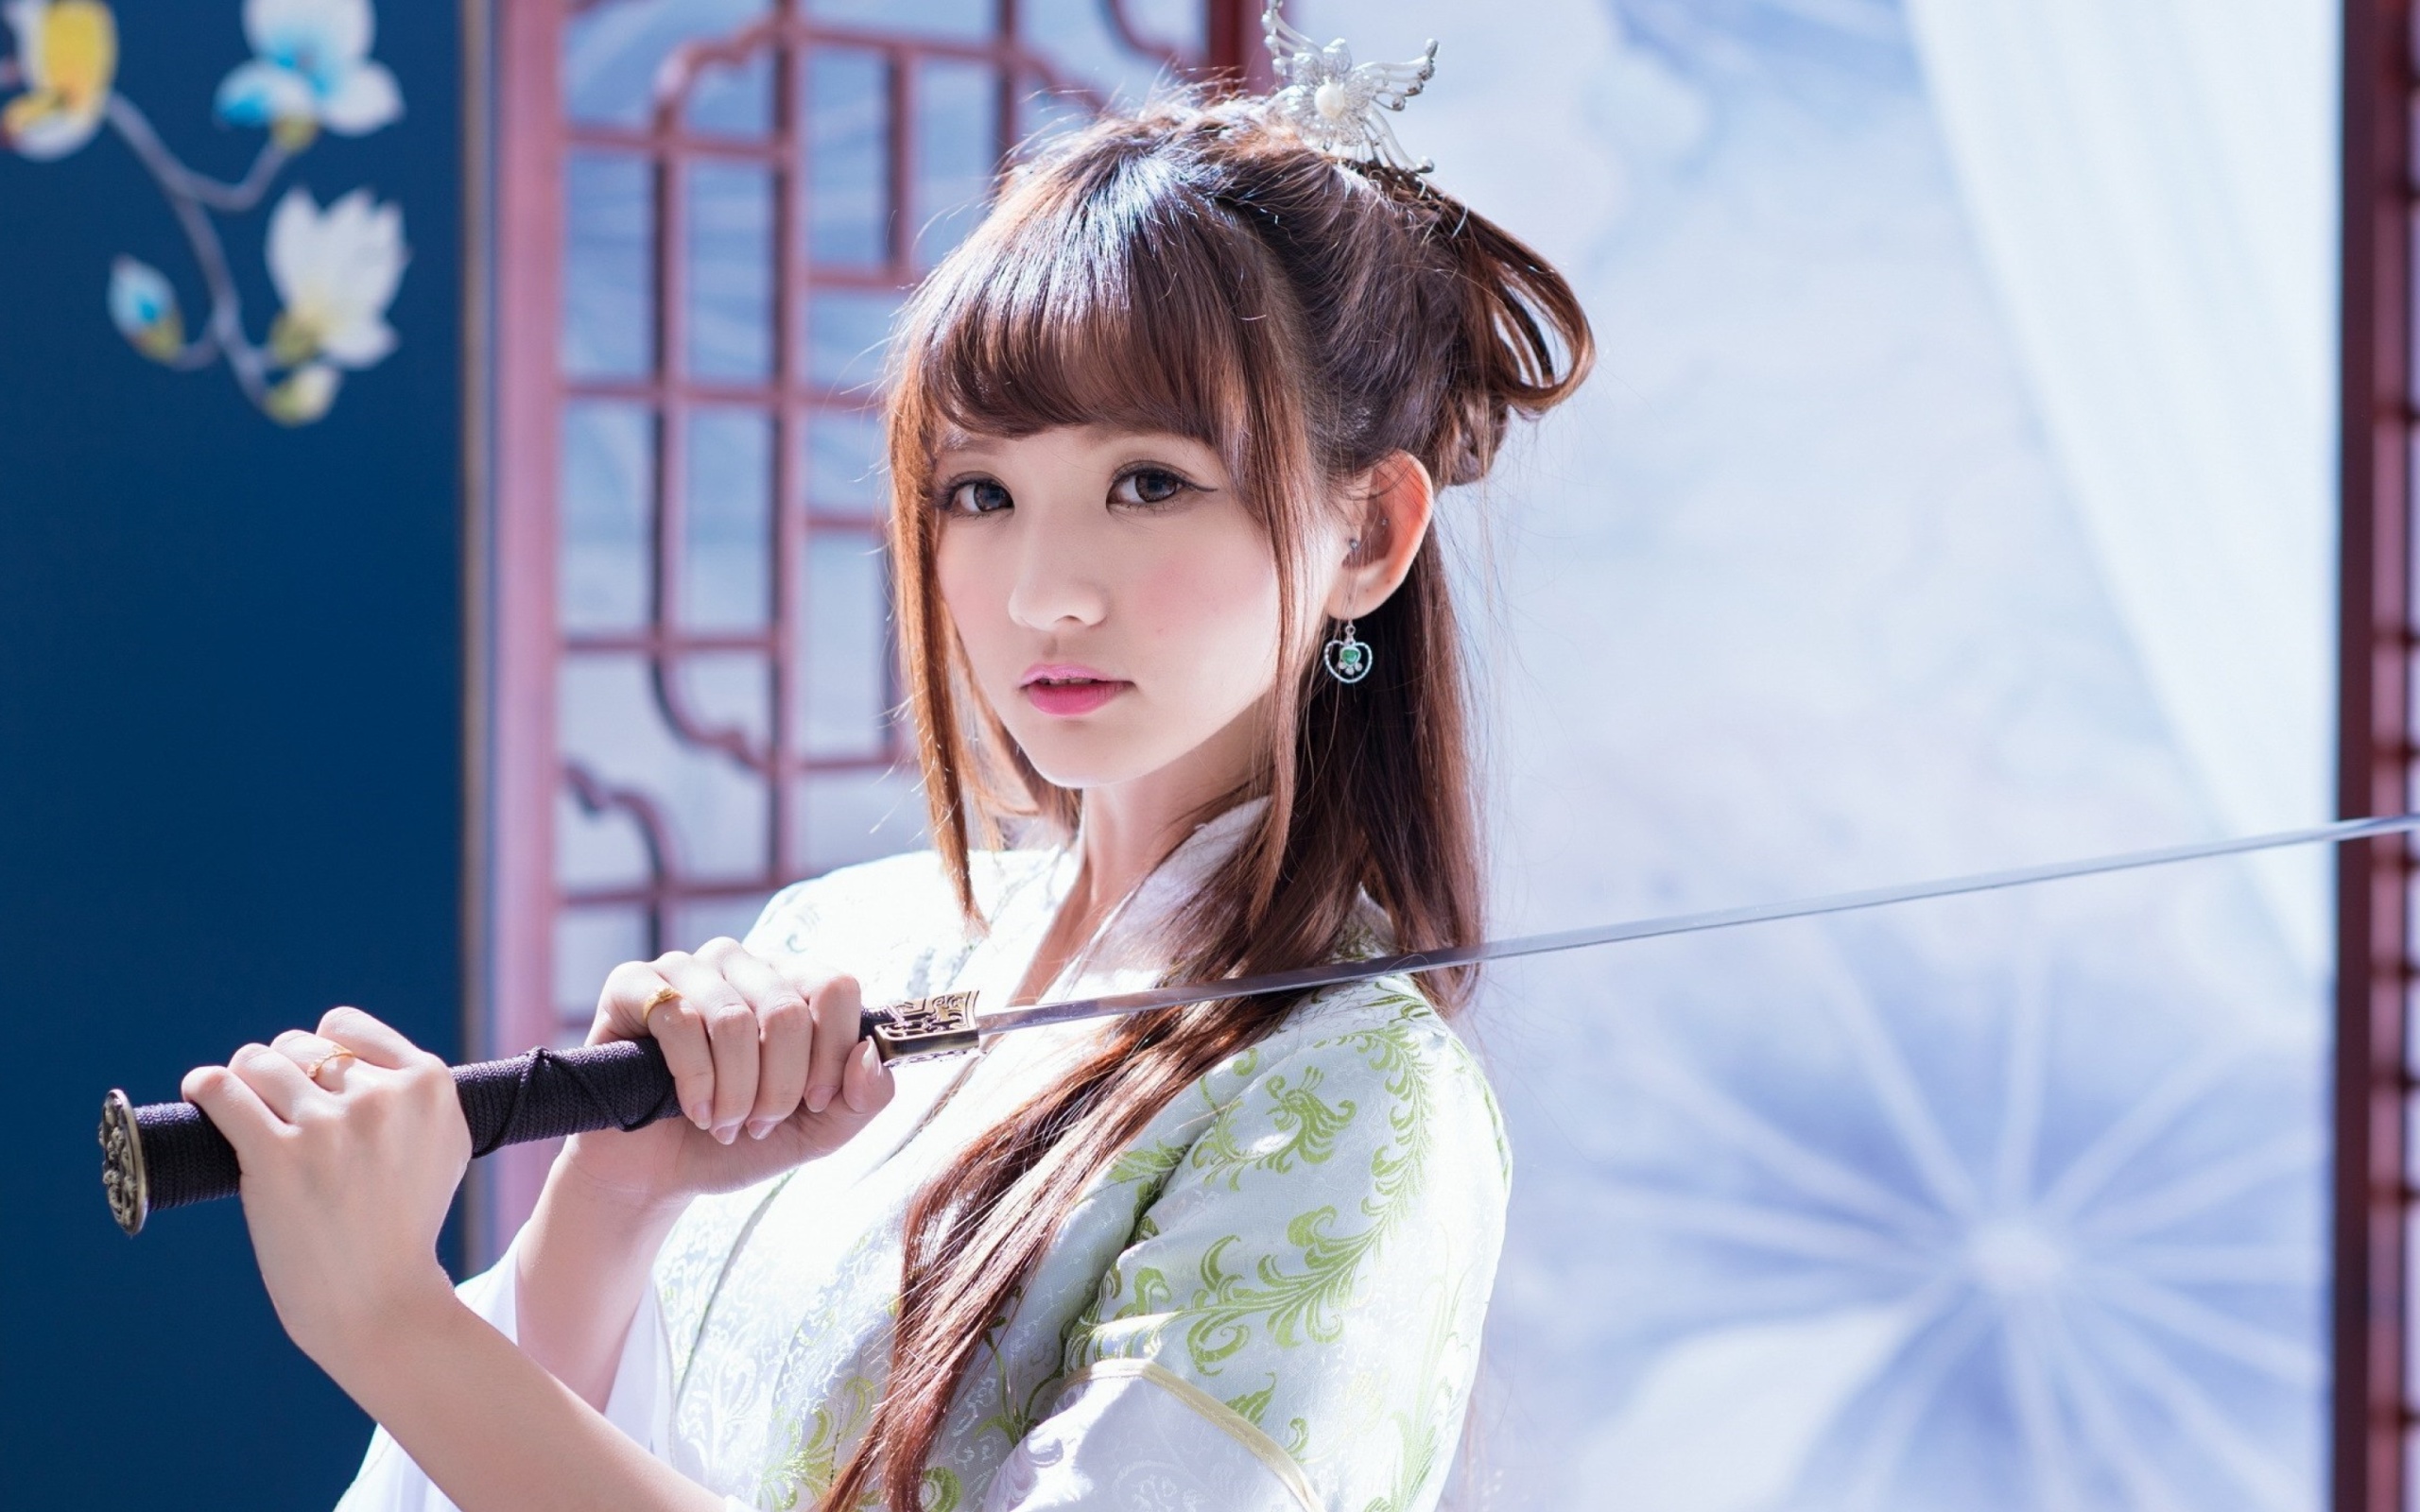 Samurai Girl with Katana wallpaper 2560x1600